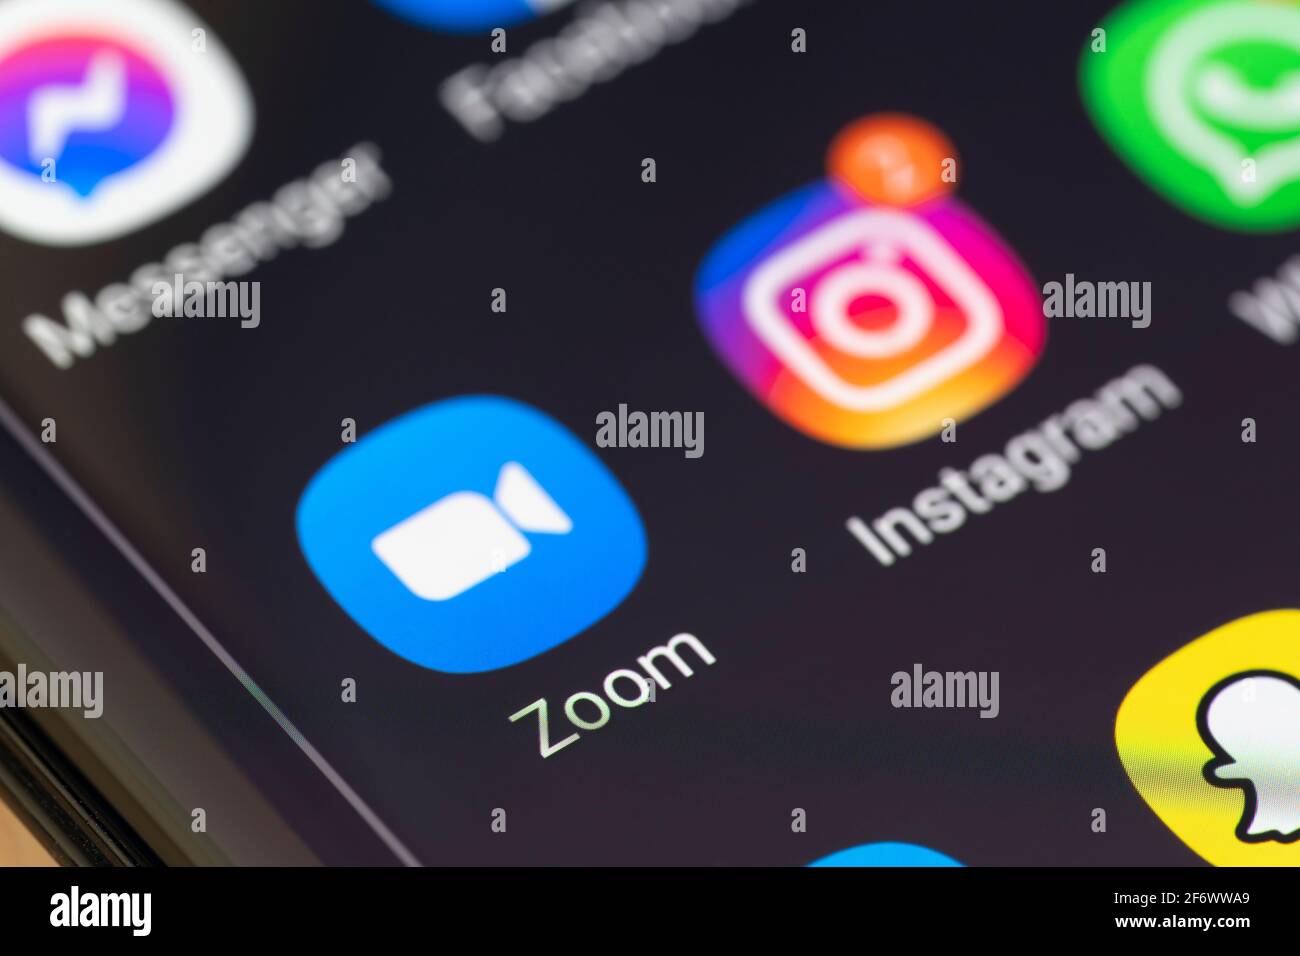 Eine Makro-Nahaufnahme der Zoom-App auf einem Smartphone-Bildschirm. Zoom ist ein proprietäres Software-Programm für Videotelefonie, das von Zoom Video Communications entwickelt wurde Stockfoto